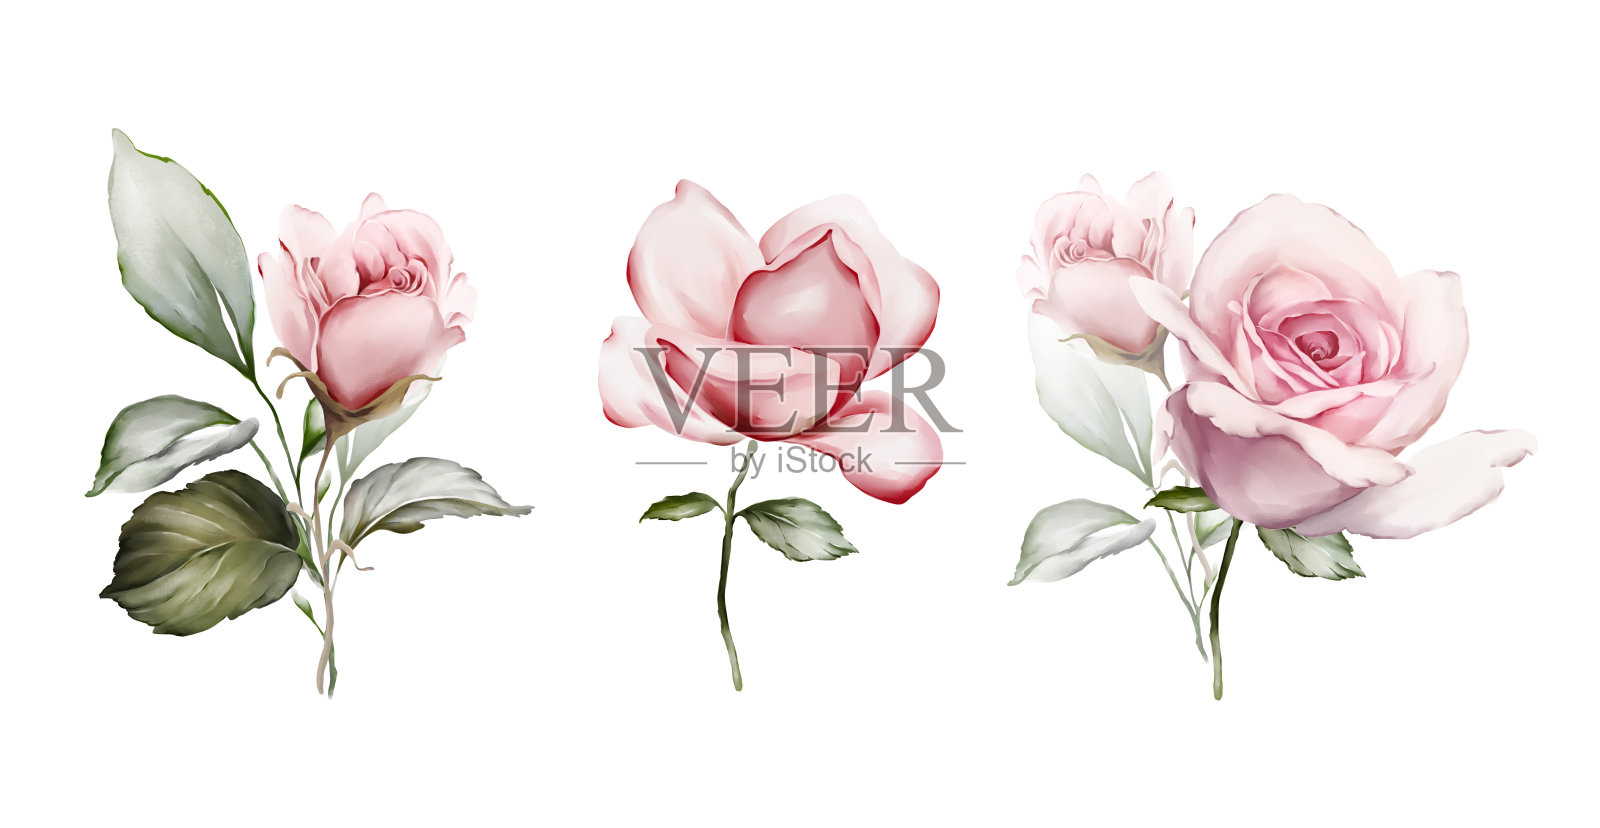 水彩画风格的玫瑰花束。贺卡花插画图片素材